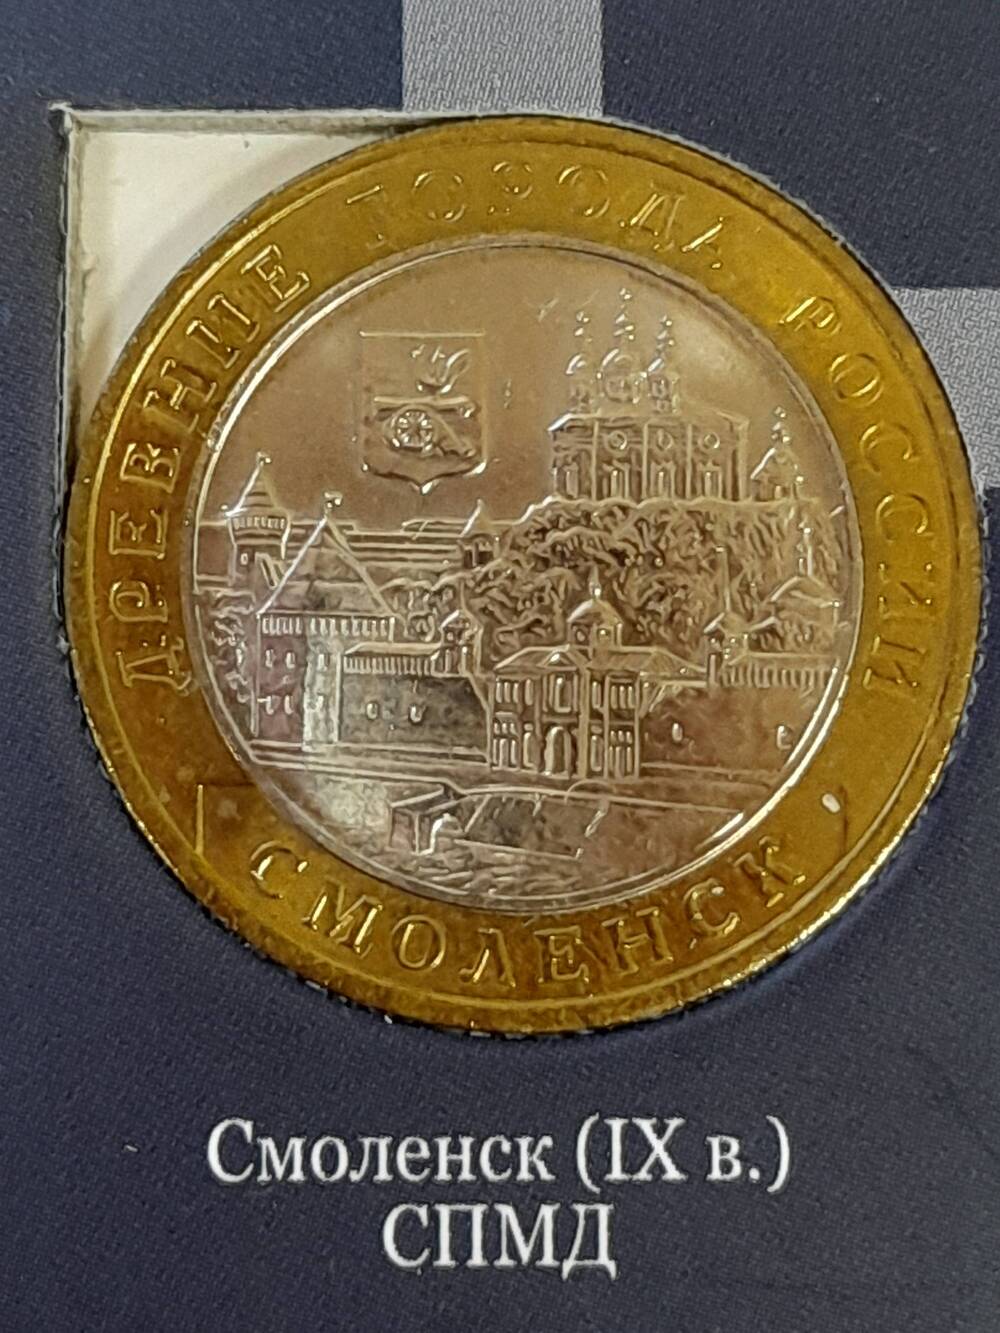 Монета памятная 10 РУБЛЕЙ. Смоленск 2008 г. Россия